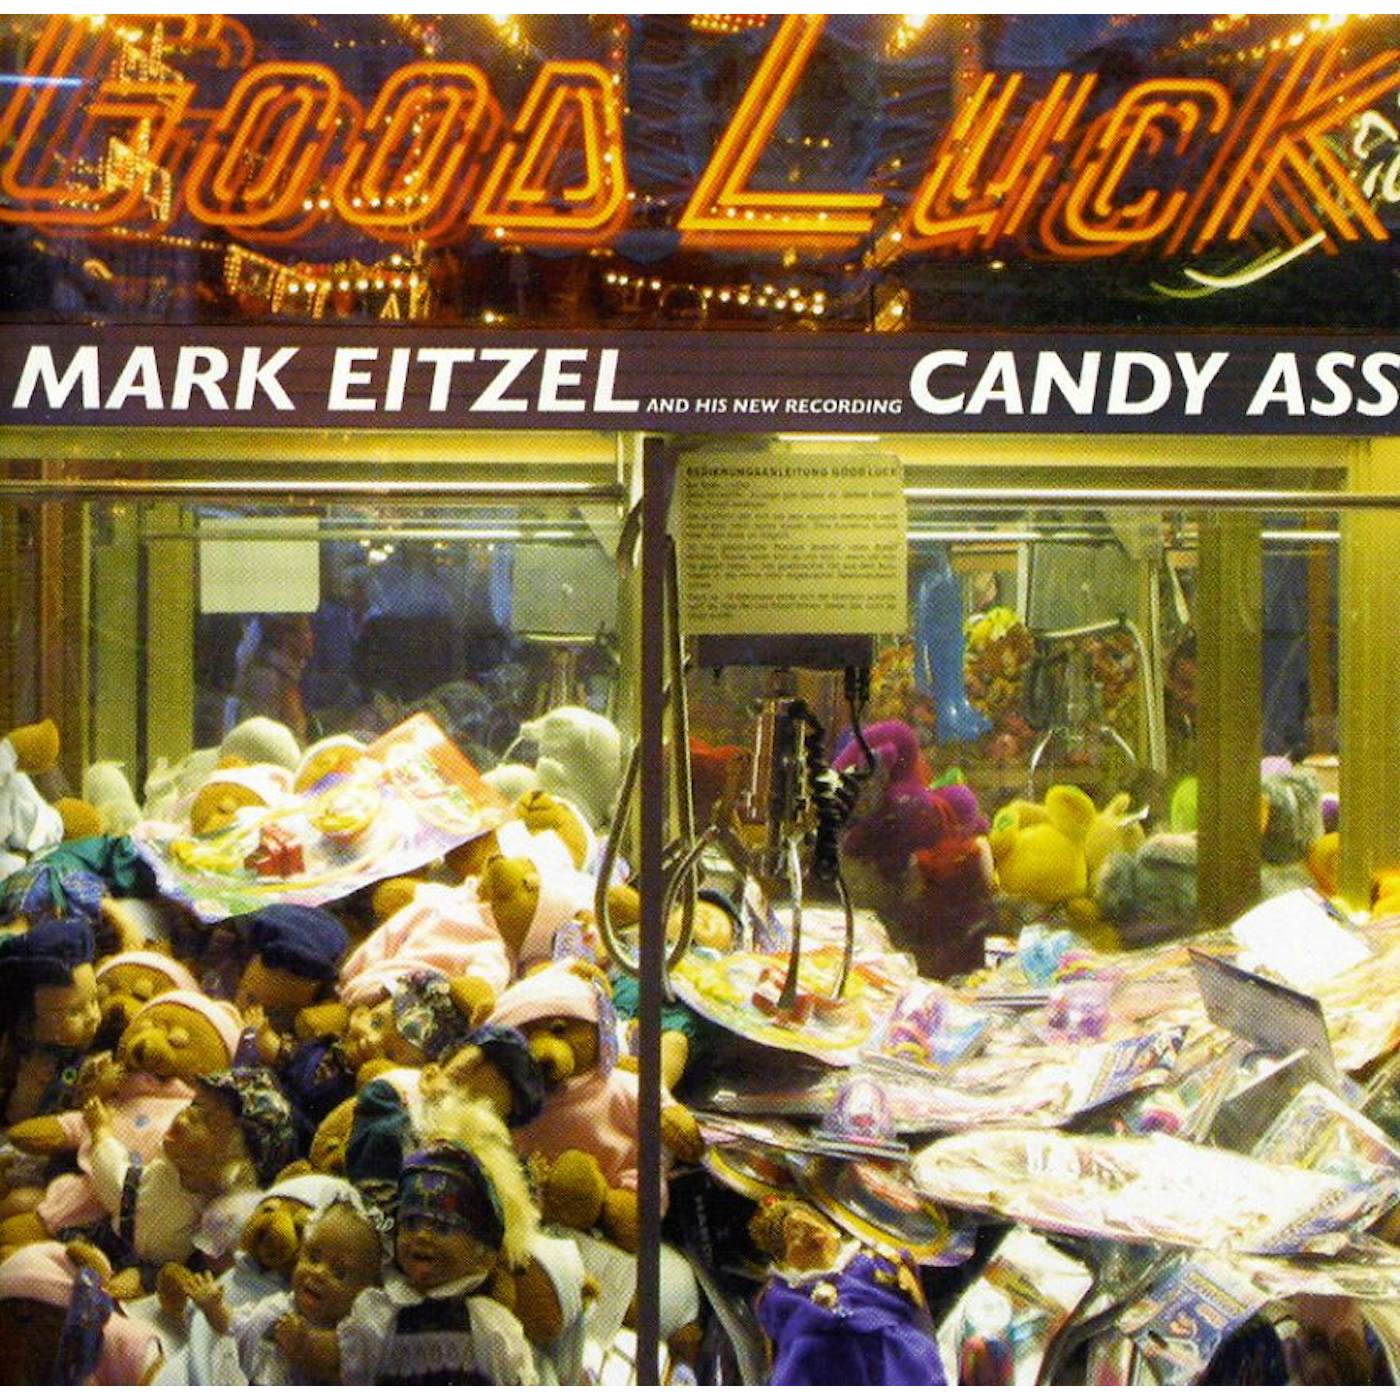 Mark Eitzel CANDY ASS CD